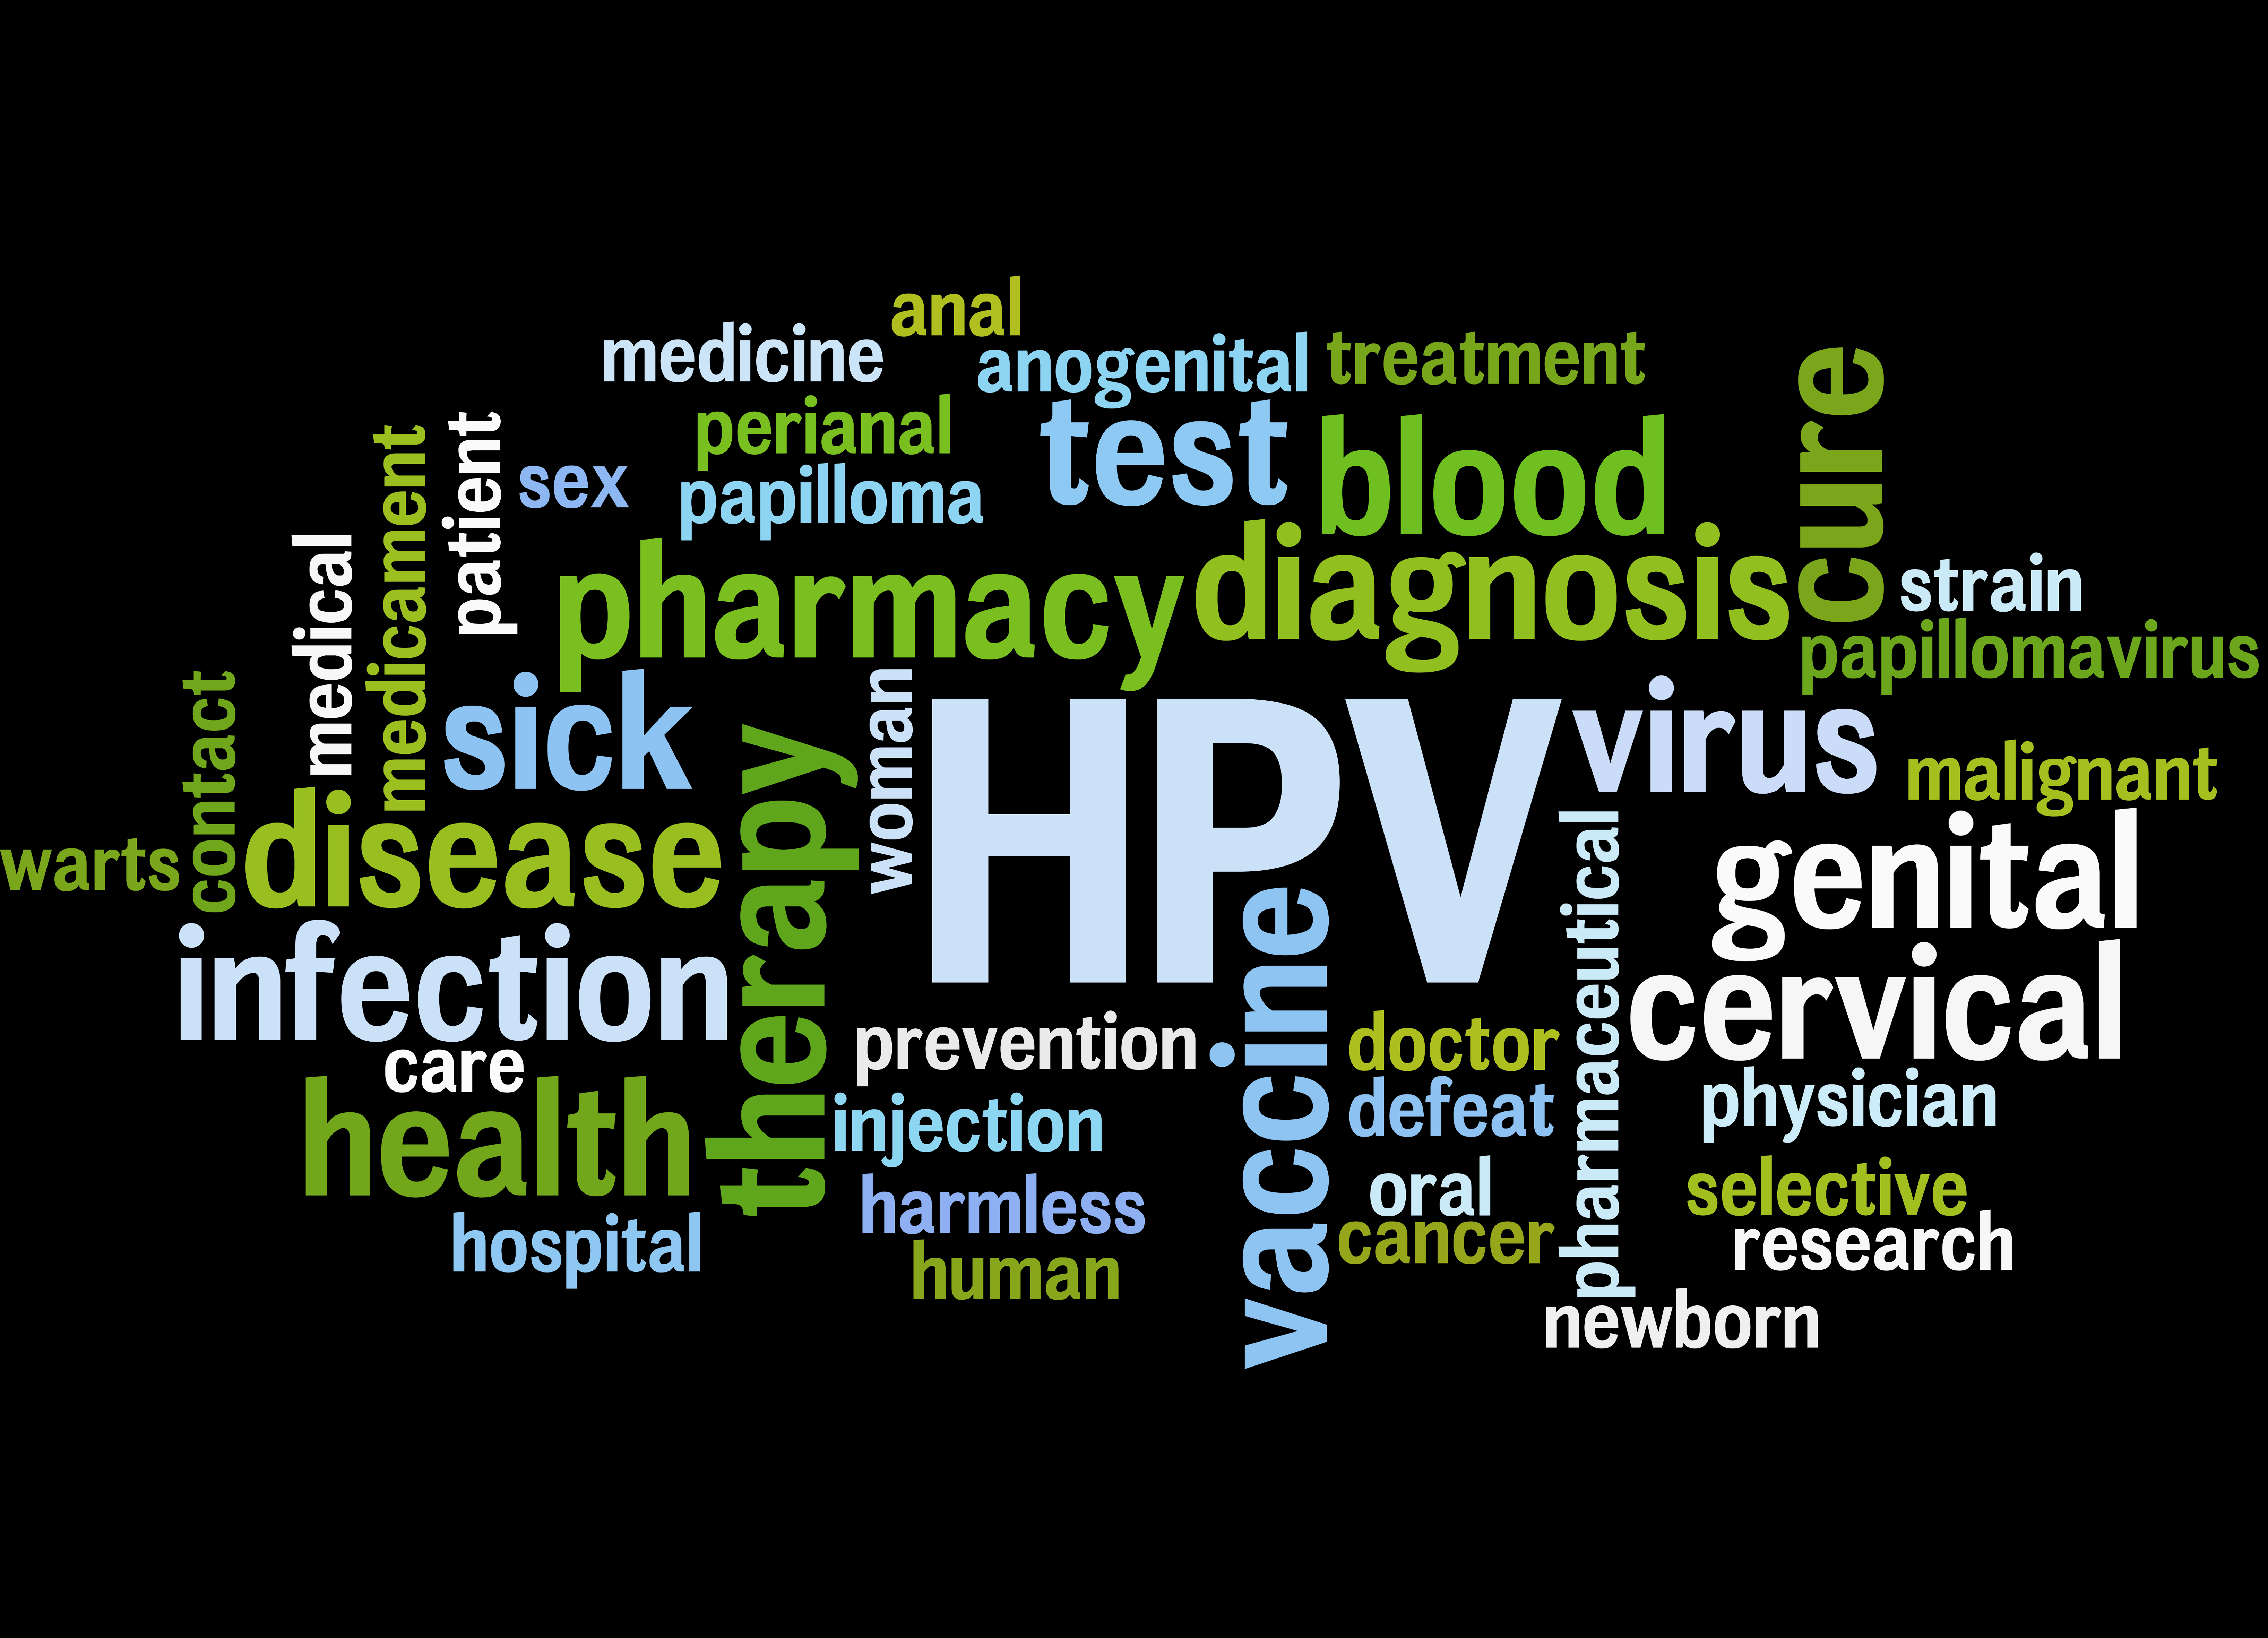 [Translate to English:] 29 procent af henviste kvinder til landets HPV-centre har indløst en recept på psykiatrisk medicin i løbet af fem år inden vaccinationen, mens tallet er 17 procent for de HPV-vaccinerede kvinder generelt.